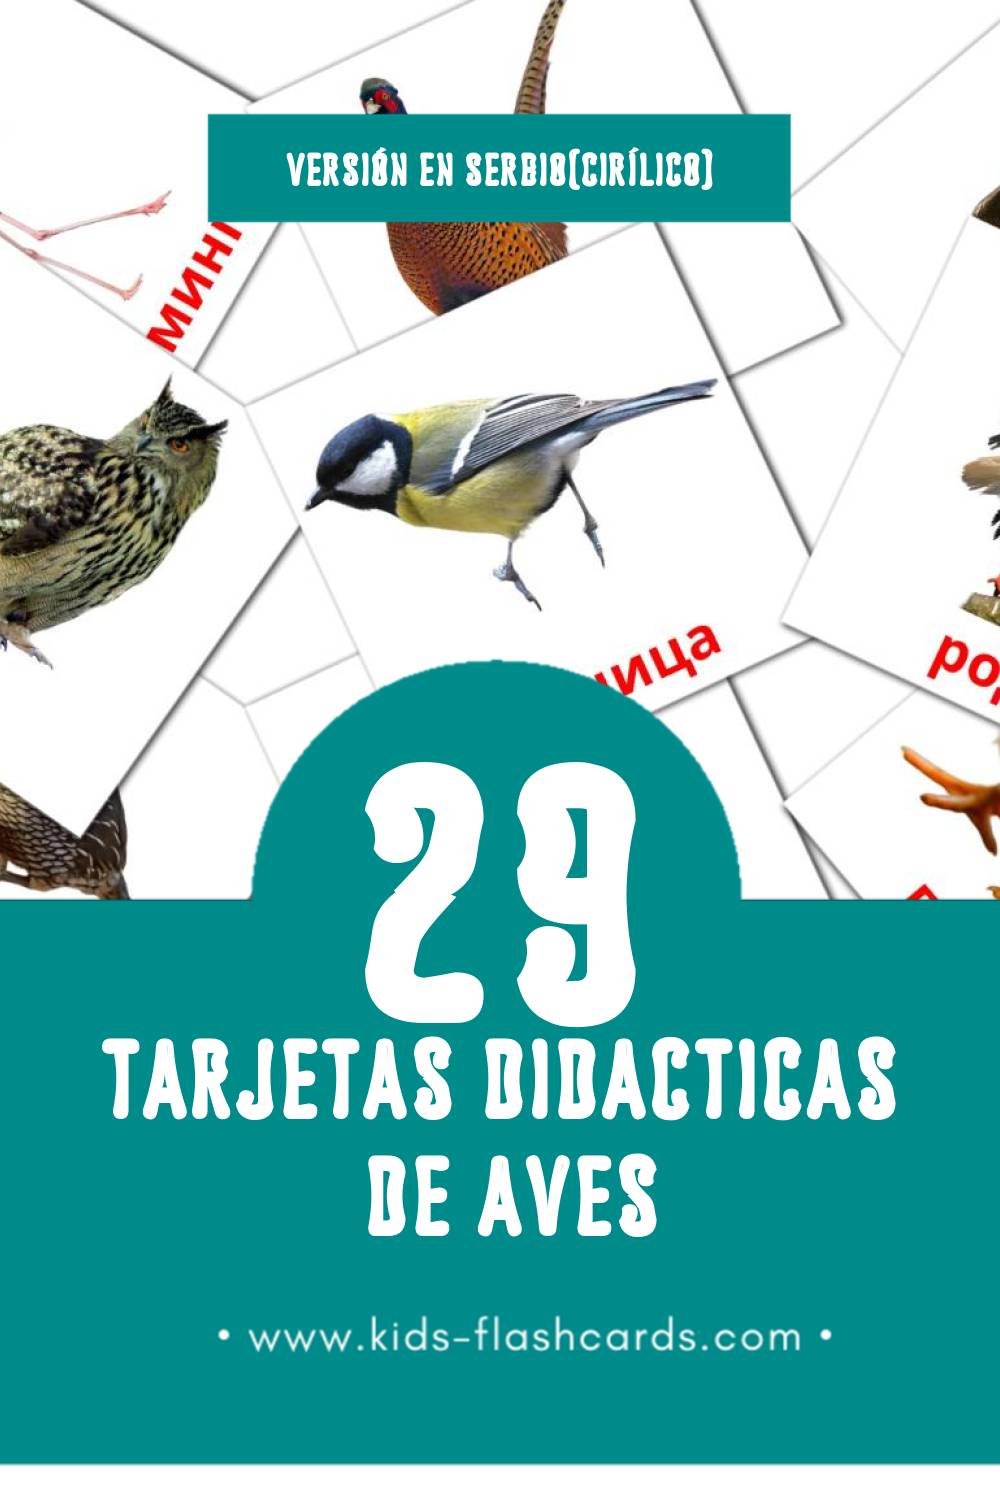 Tarjetas visuales de Птице para niños pequeños (29 tarjetas en Serbio(cirílico))